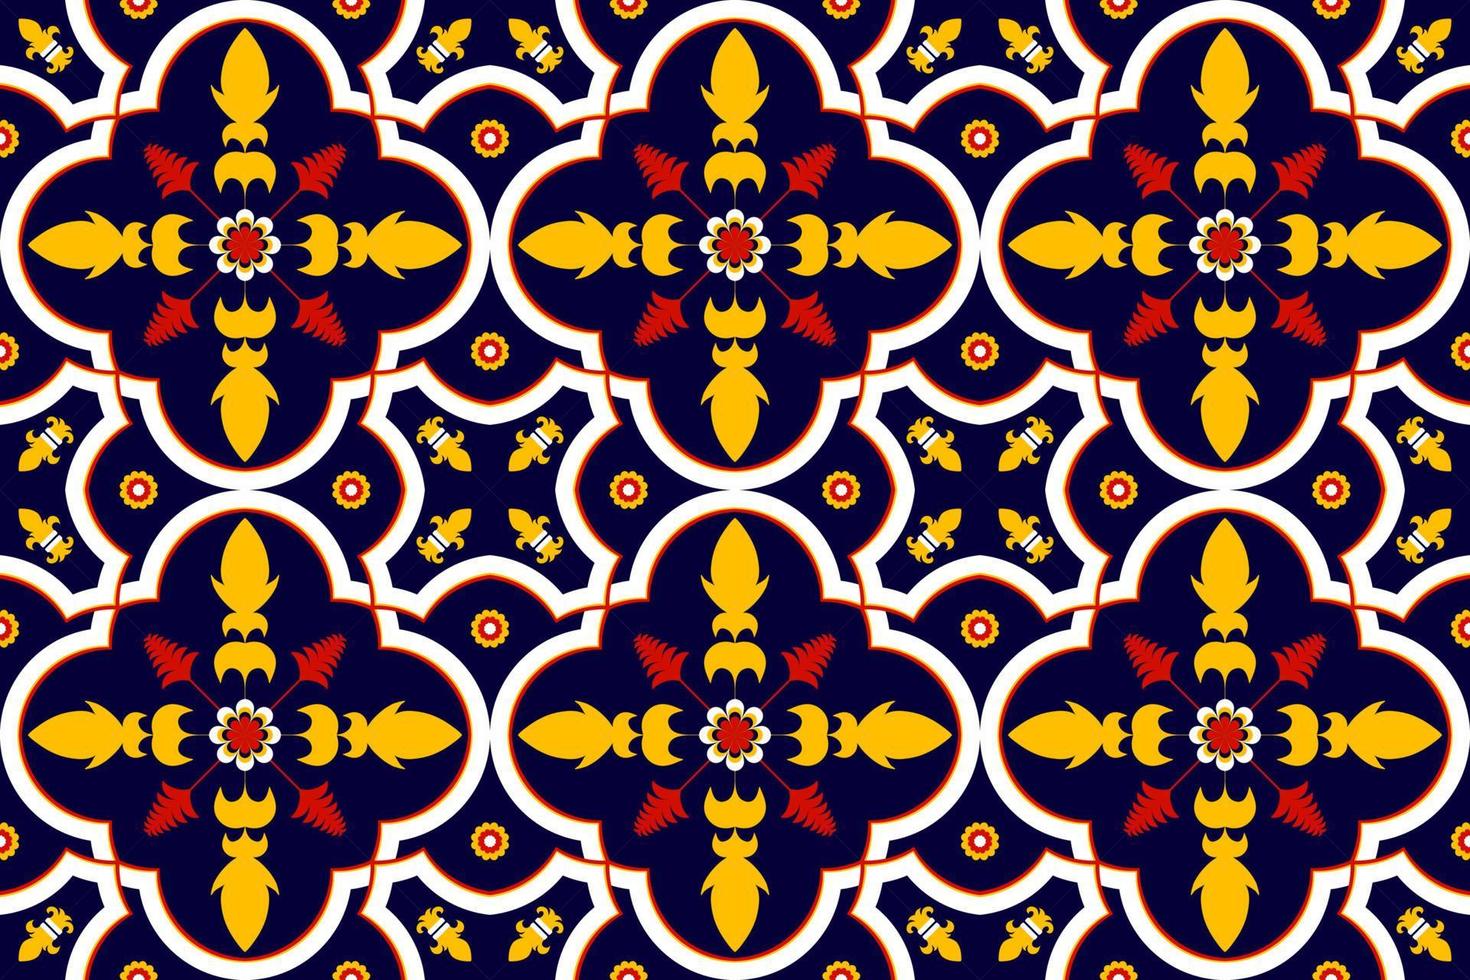 étnico sem costura padrão flor cor oriental. estilo nativo. design para plano de fundo,textura,tecido,batik,vestuário,embrulho,papel de parede,tapete,azulejo,bordado vetor